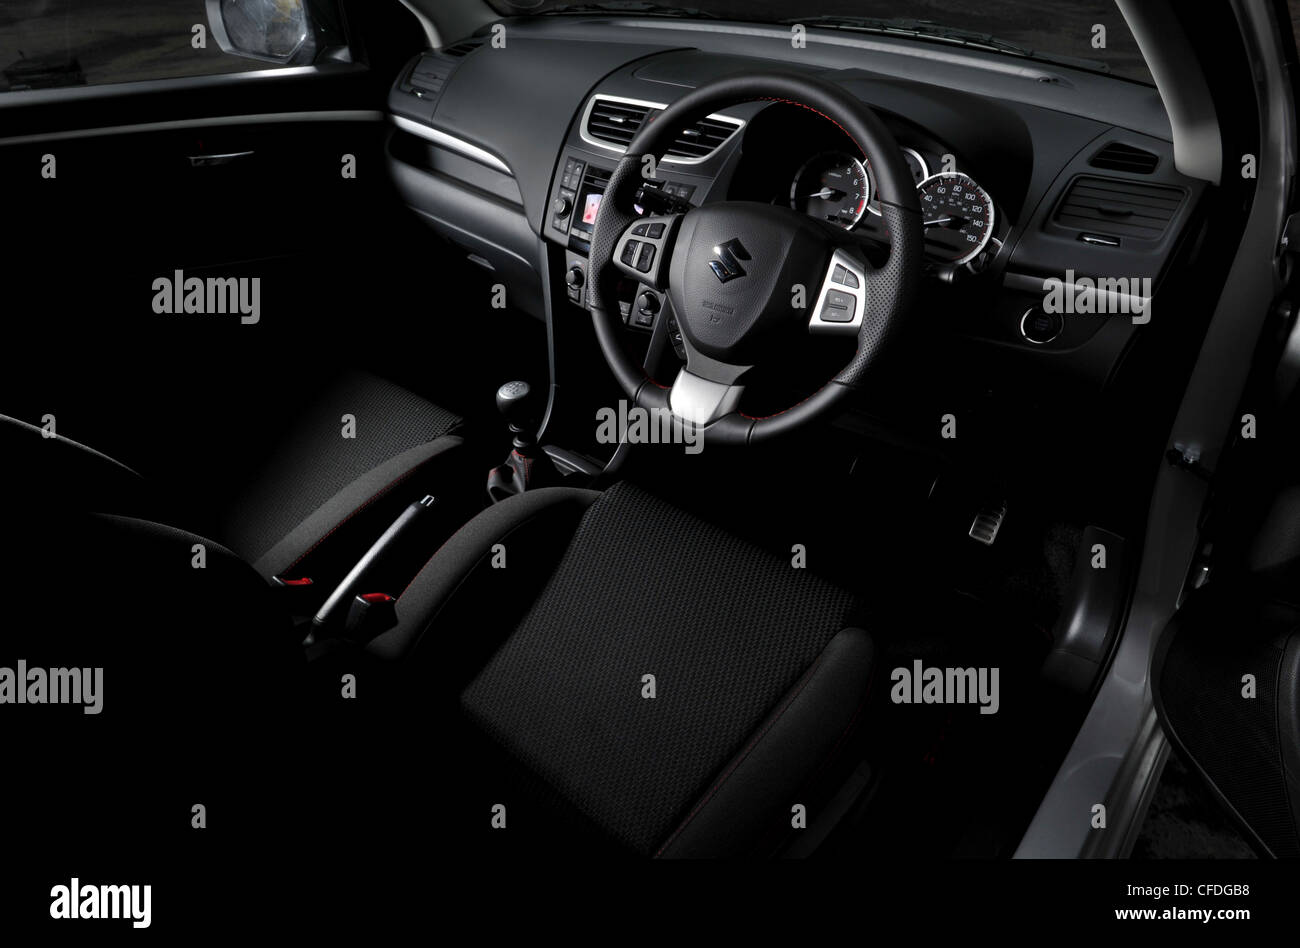 2012 Model Suzuki Swift Sport Hot Hatch Sports Car Interior